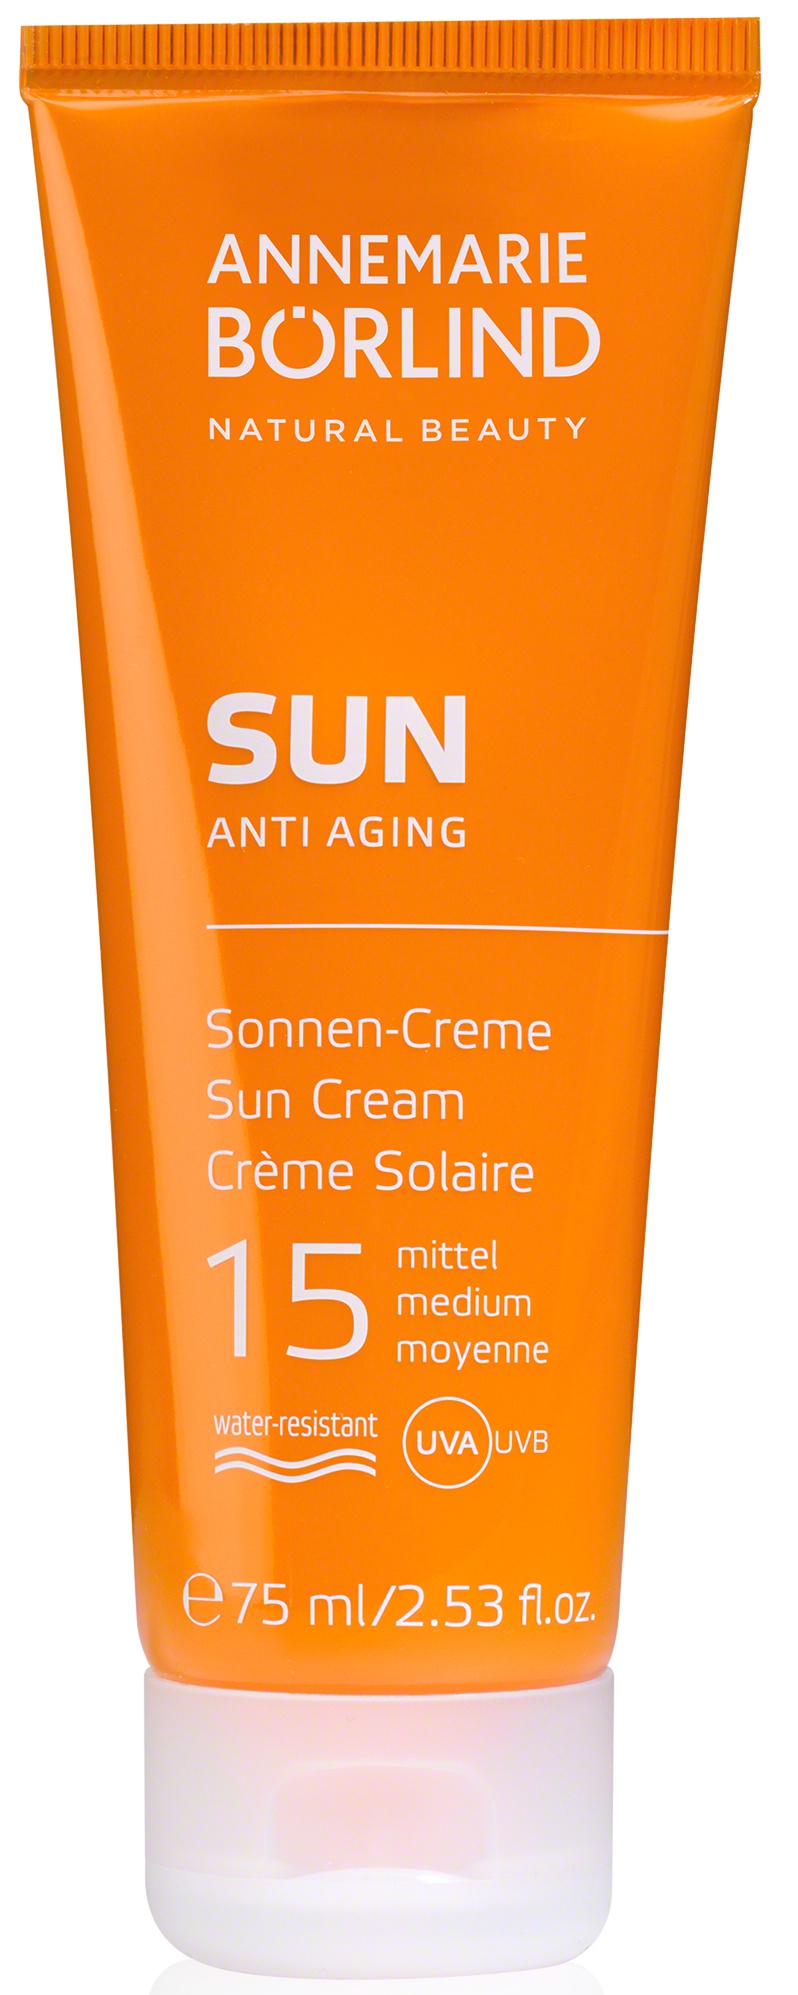 Annemarie Börlind Sun Anti Aging Sun Cream SPF 15